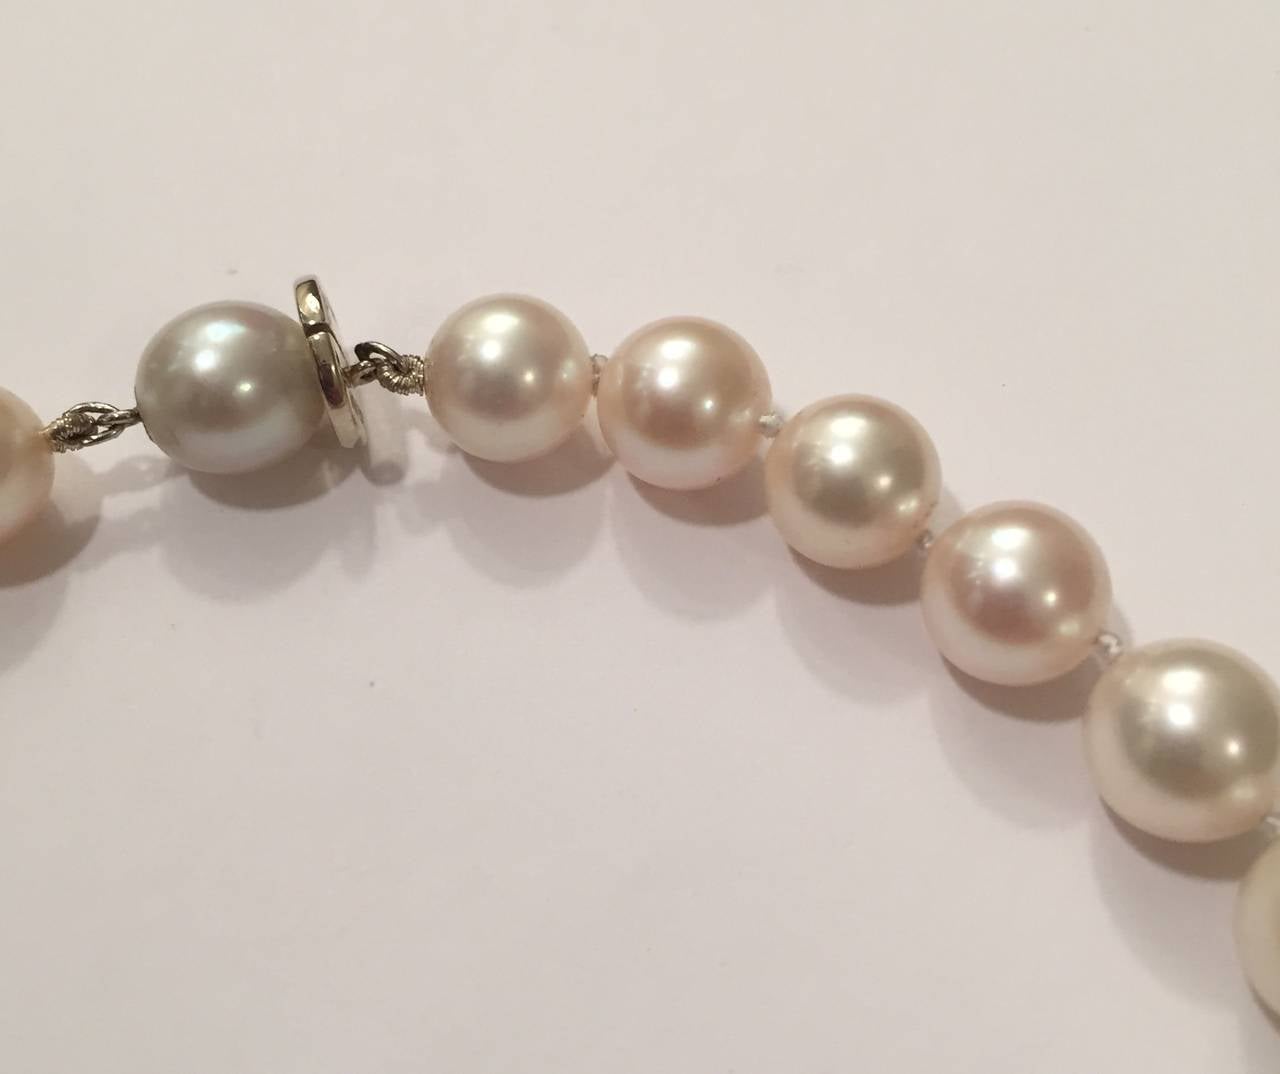 Elegante, leicht abgestufte weiße Zuchtperlenkette mit Verschluss aus 18 Karat Weißgold.  

Die cremefarbenen Perlen mit schönem Glanz messen 8 x 10 mm und sind bei 17